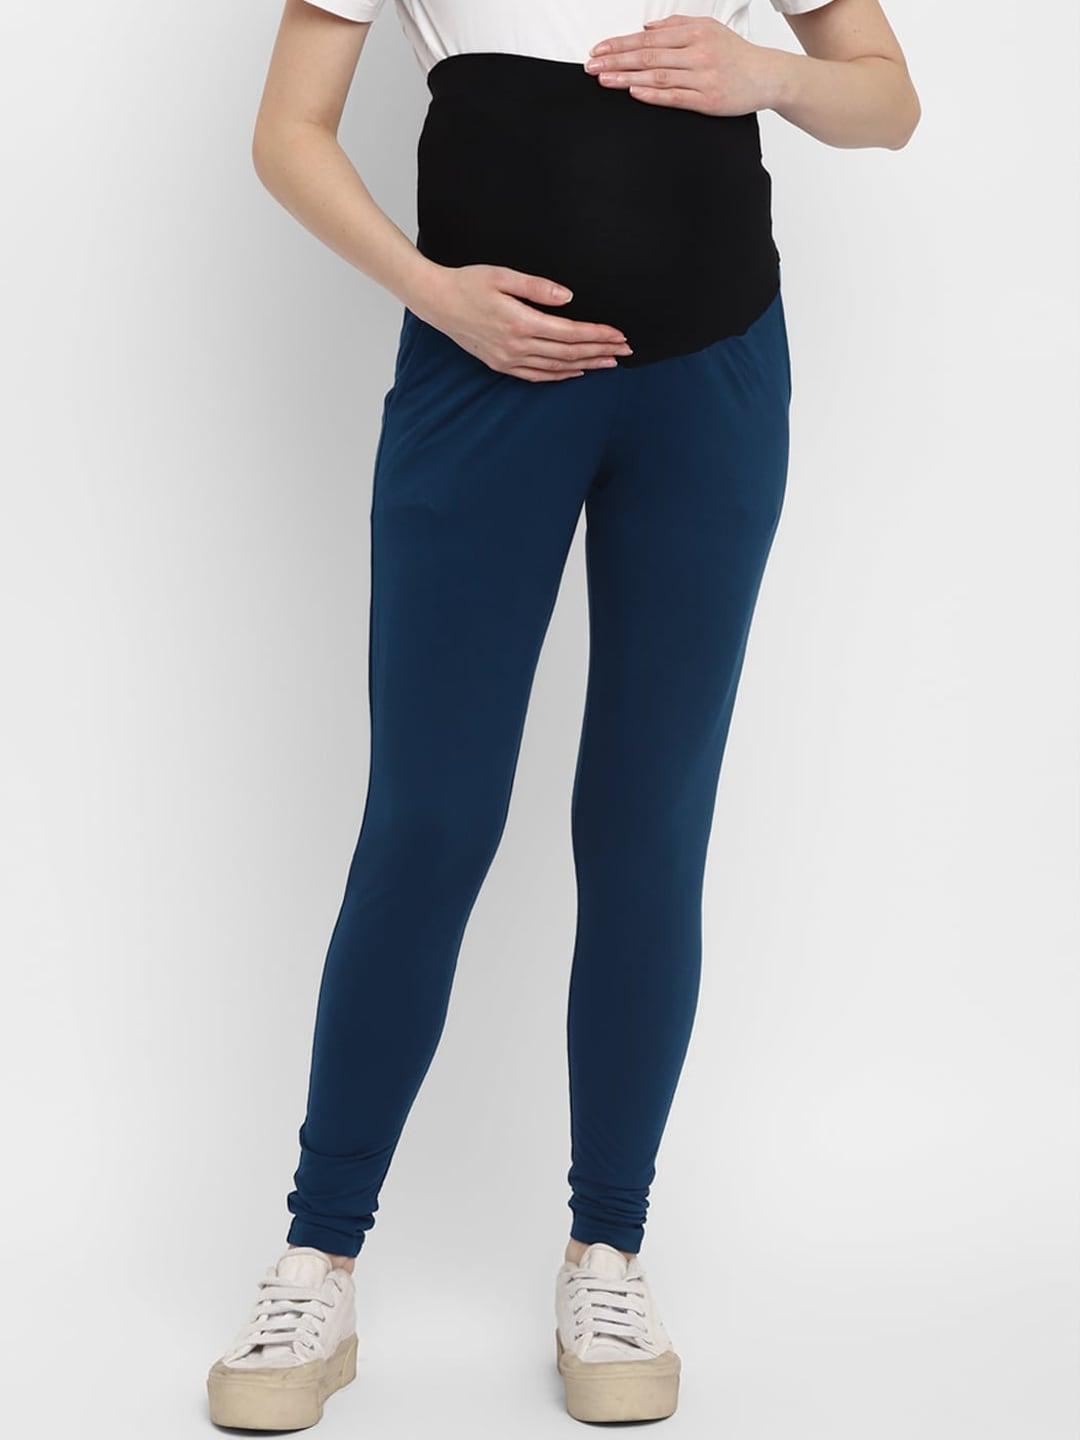 momsoon-maternity-women-navy-blue-&-black-solid-ankle-length-leggings